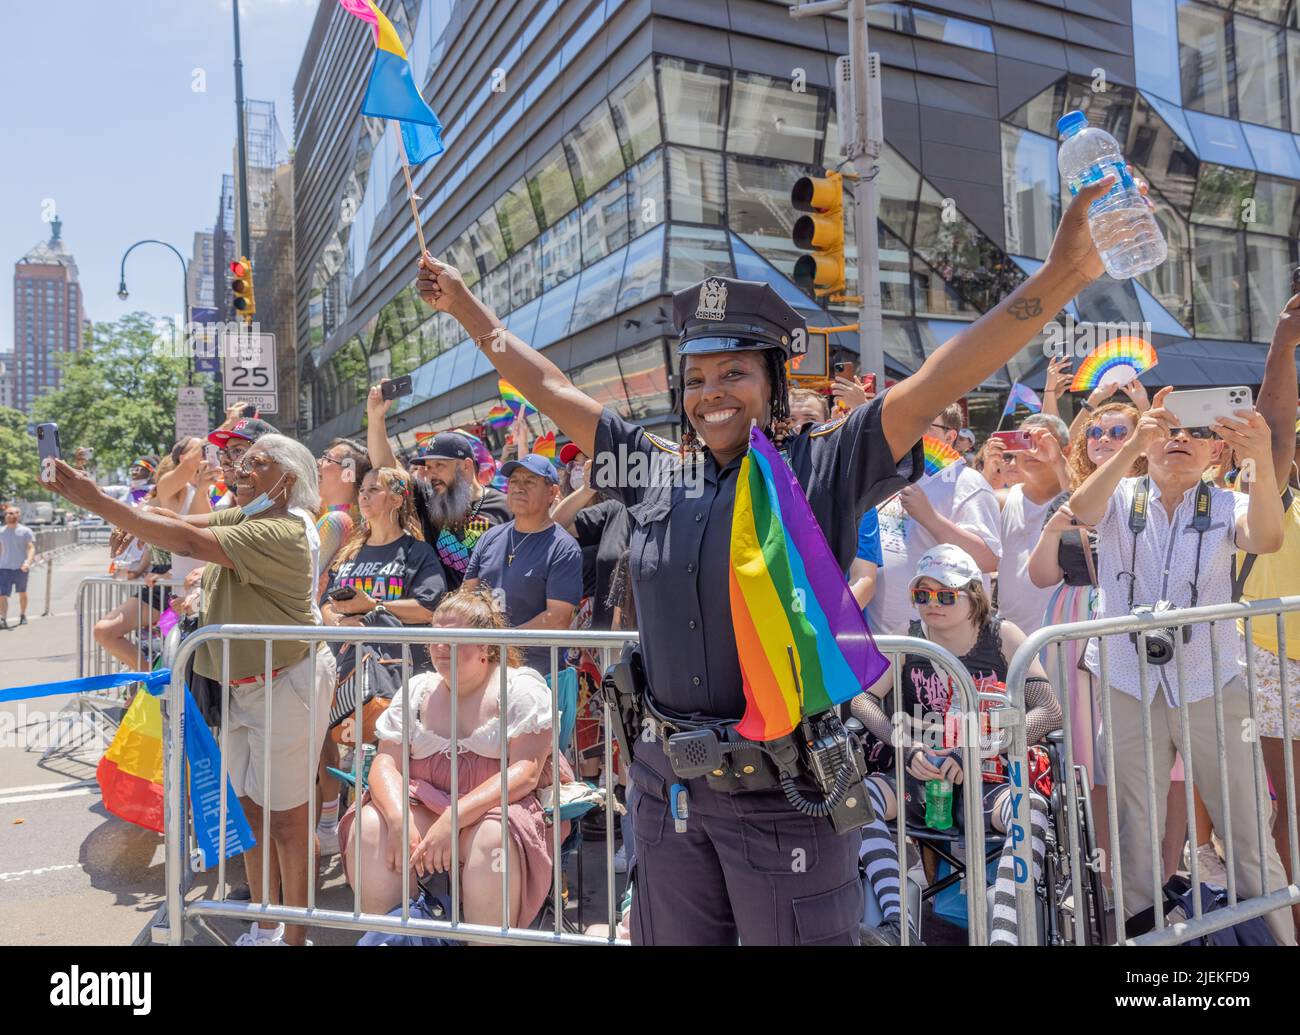 NEW YORK, New York – 26 juin 2022 : un policier de la ville de New York est vu avec des spectateurs lors de la Marche de la fierté de New York en 2022 à Manhattan. Banque D'Images